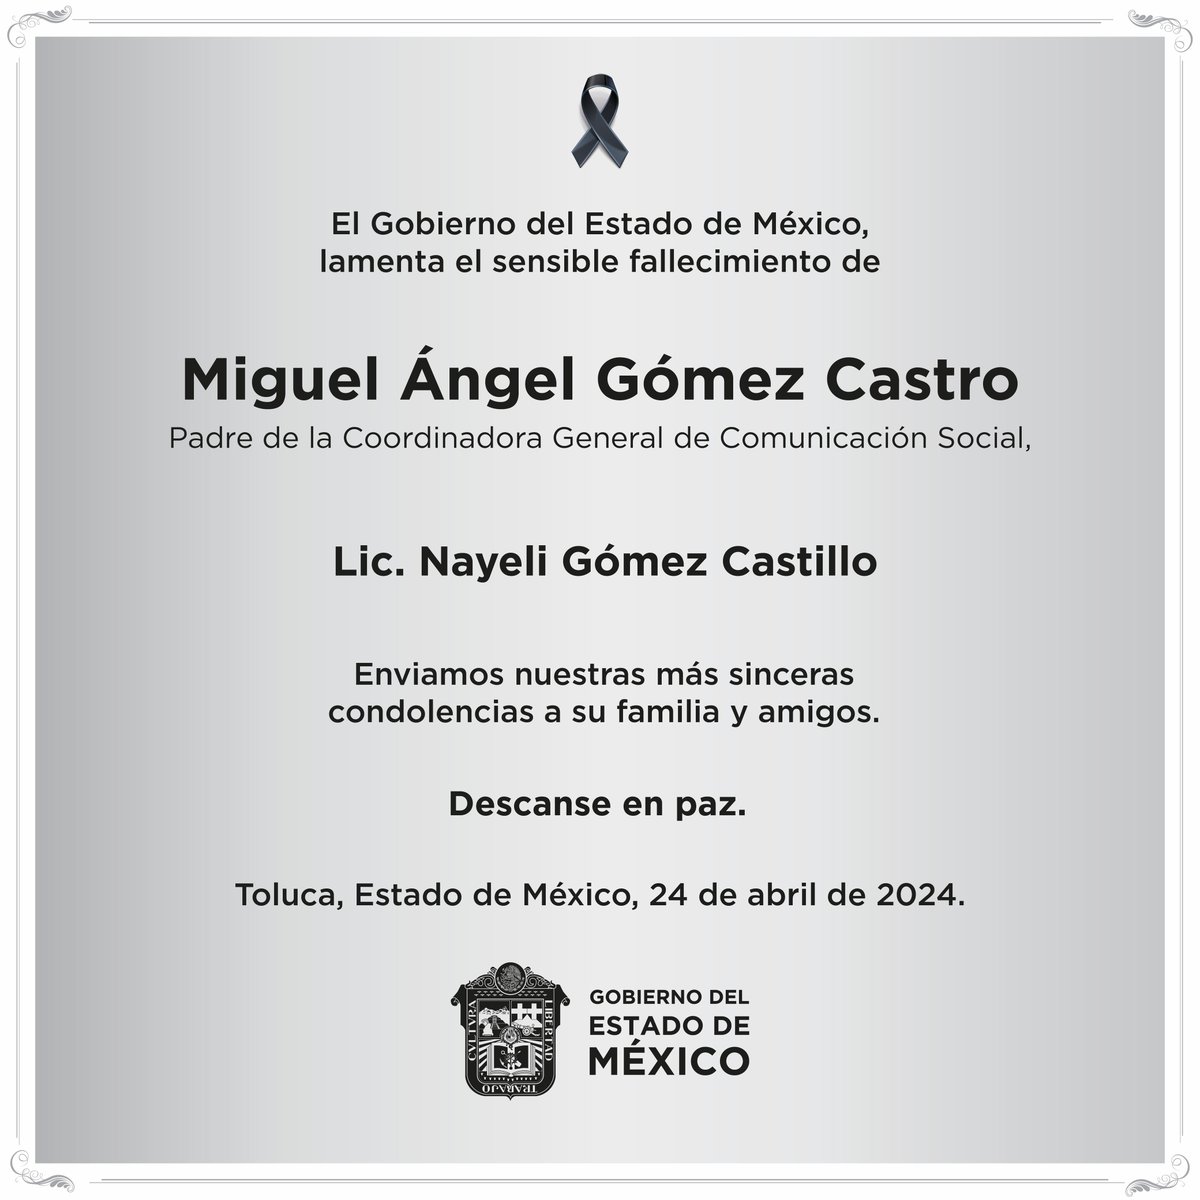 Lamentamos el sensible fallecimiento del señor Miguel Ángel Gómez Castro, padre de la Lic. Nayeli Gómez Castillo, Coordinadora General de Comunicación Social. Expresamos nuestras condolencias y enviamos un afectuoso abrazo a su familia y amigos.